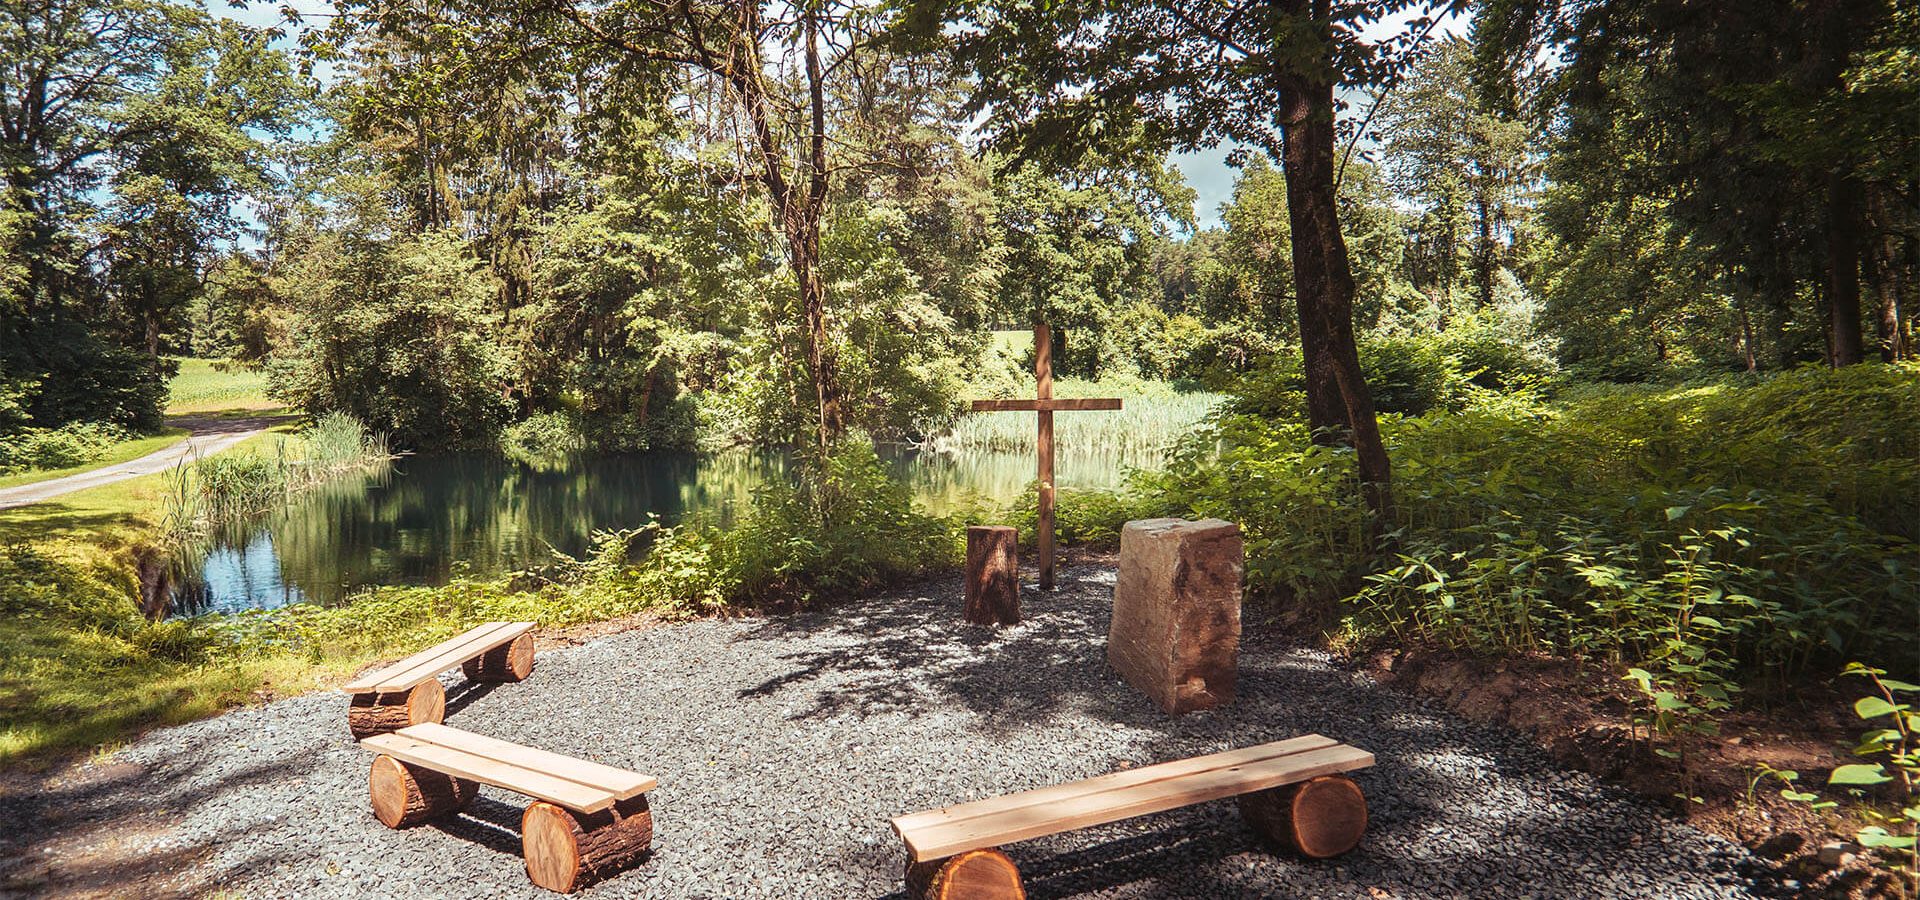 paxnatura Naturbestattung - Waldfriedhof Wundschuher See bietet einen Andachtsplatz mit einem malerischen Teich im Hintergrund